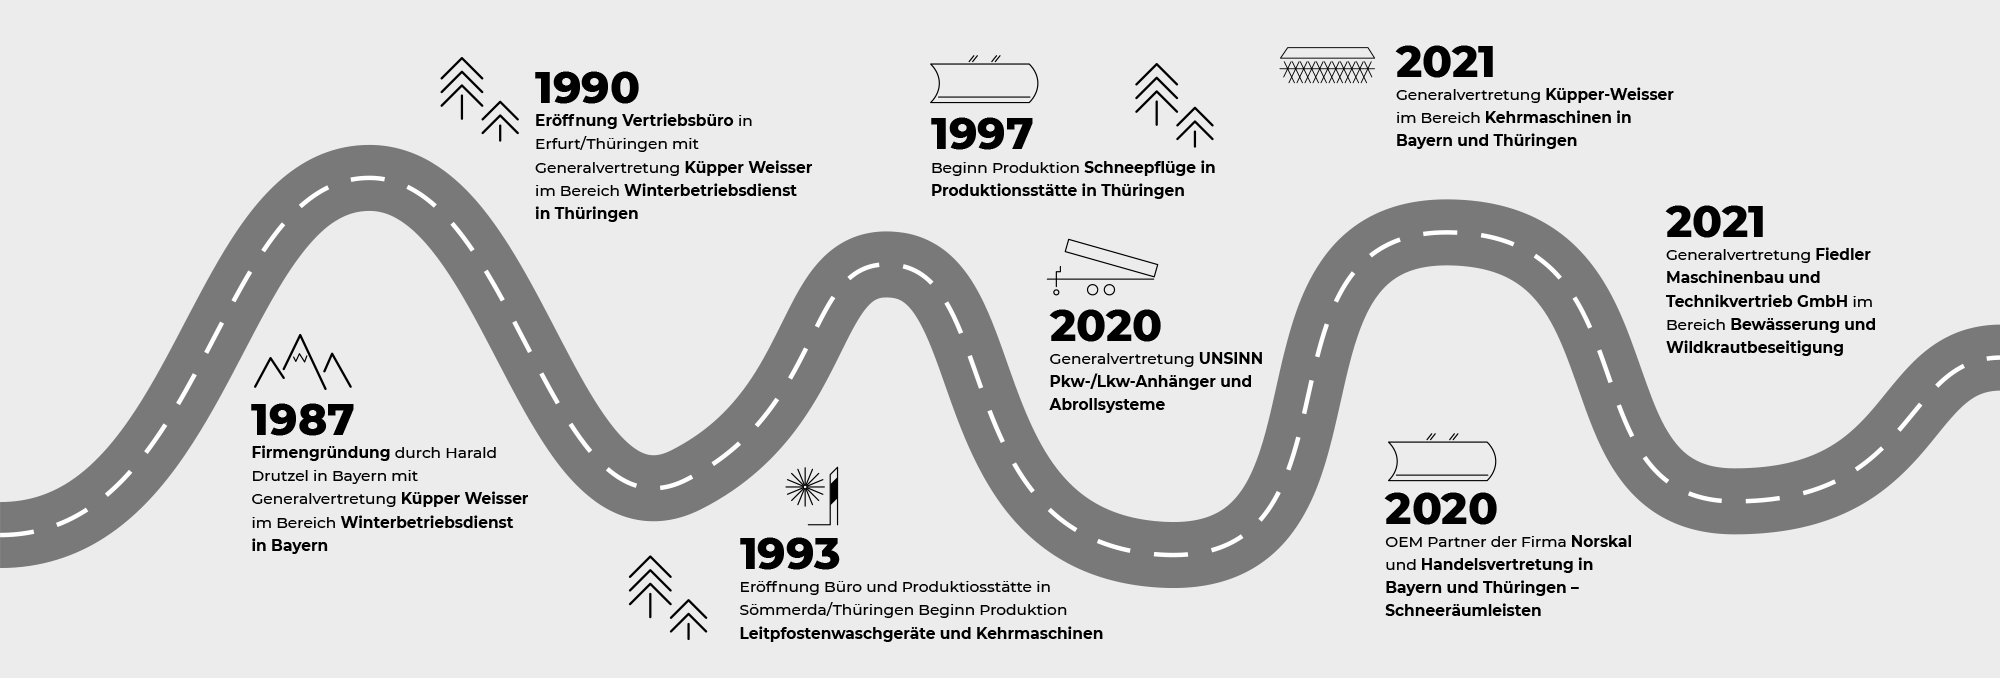 Drutzel Kommunaltechnik Geschichte 1987 bis heute